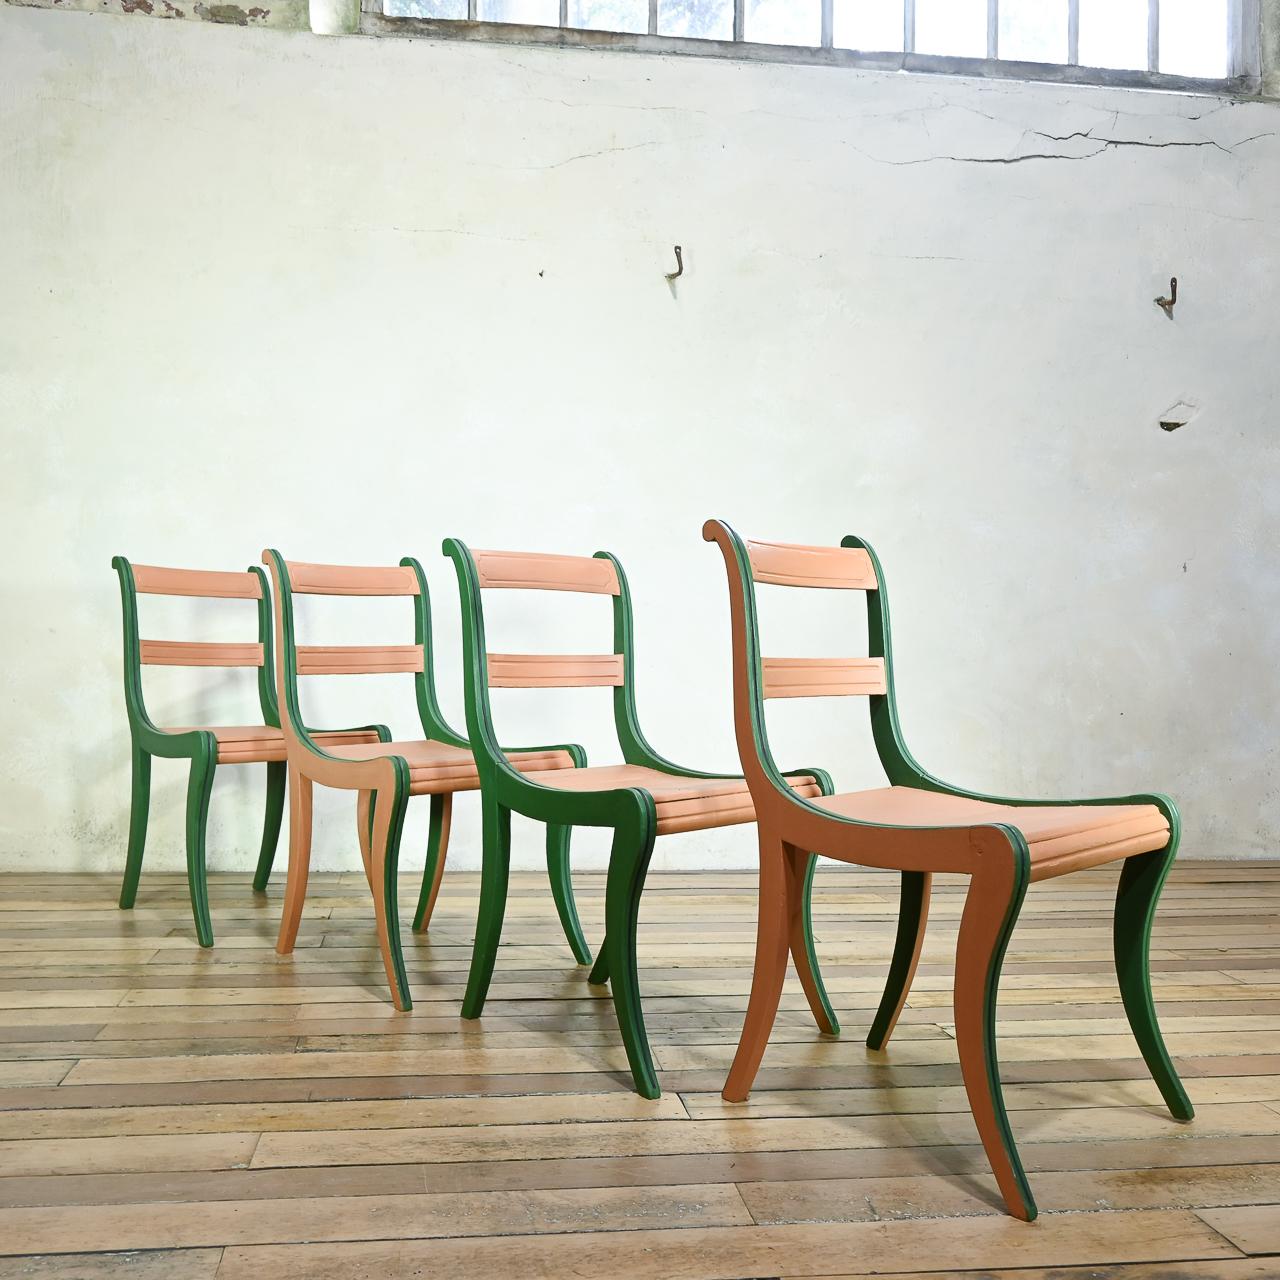 Ein exquisites Set von vier Regency-Seitenstühlen, die sich durch ihre bezaubernde zweifarbige Lackierung auszeichnen, die dekorativen Charme und Freude ausstrahlt. Dieses reizvolle Merkmal verleiht jedem Stuhl Tiefe und Reichtum und hebt seine